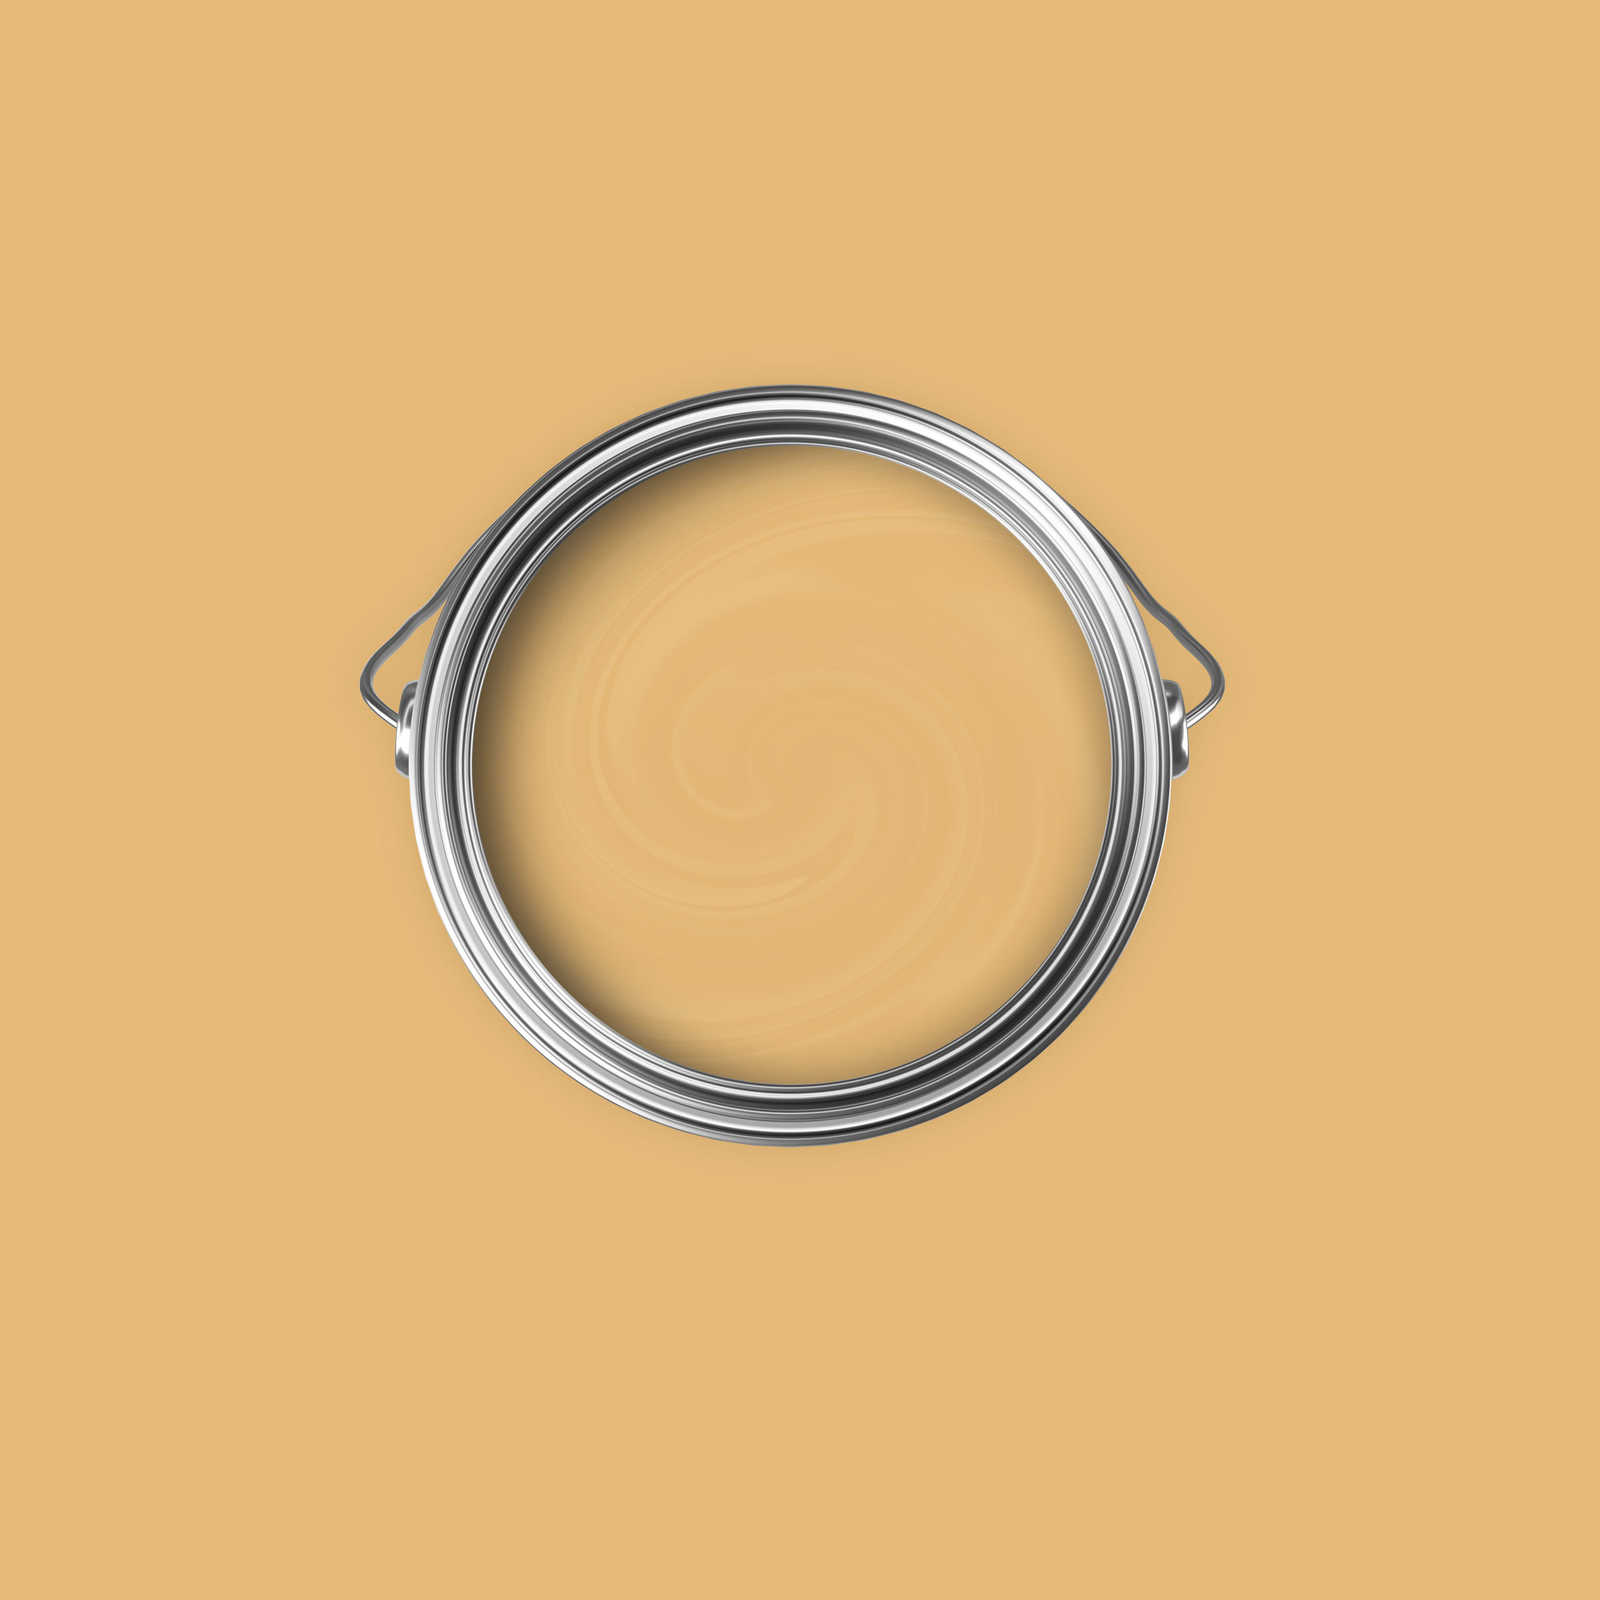             Premium Muurverf Wake Up Mosterdgeel »Beige Orange/Sassy Saffron« NW811 – 2,5 liter
        